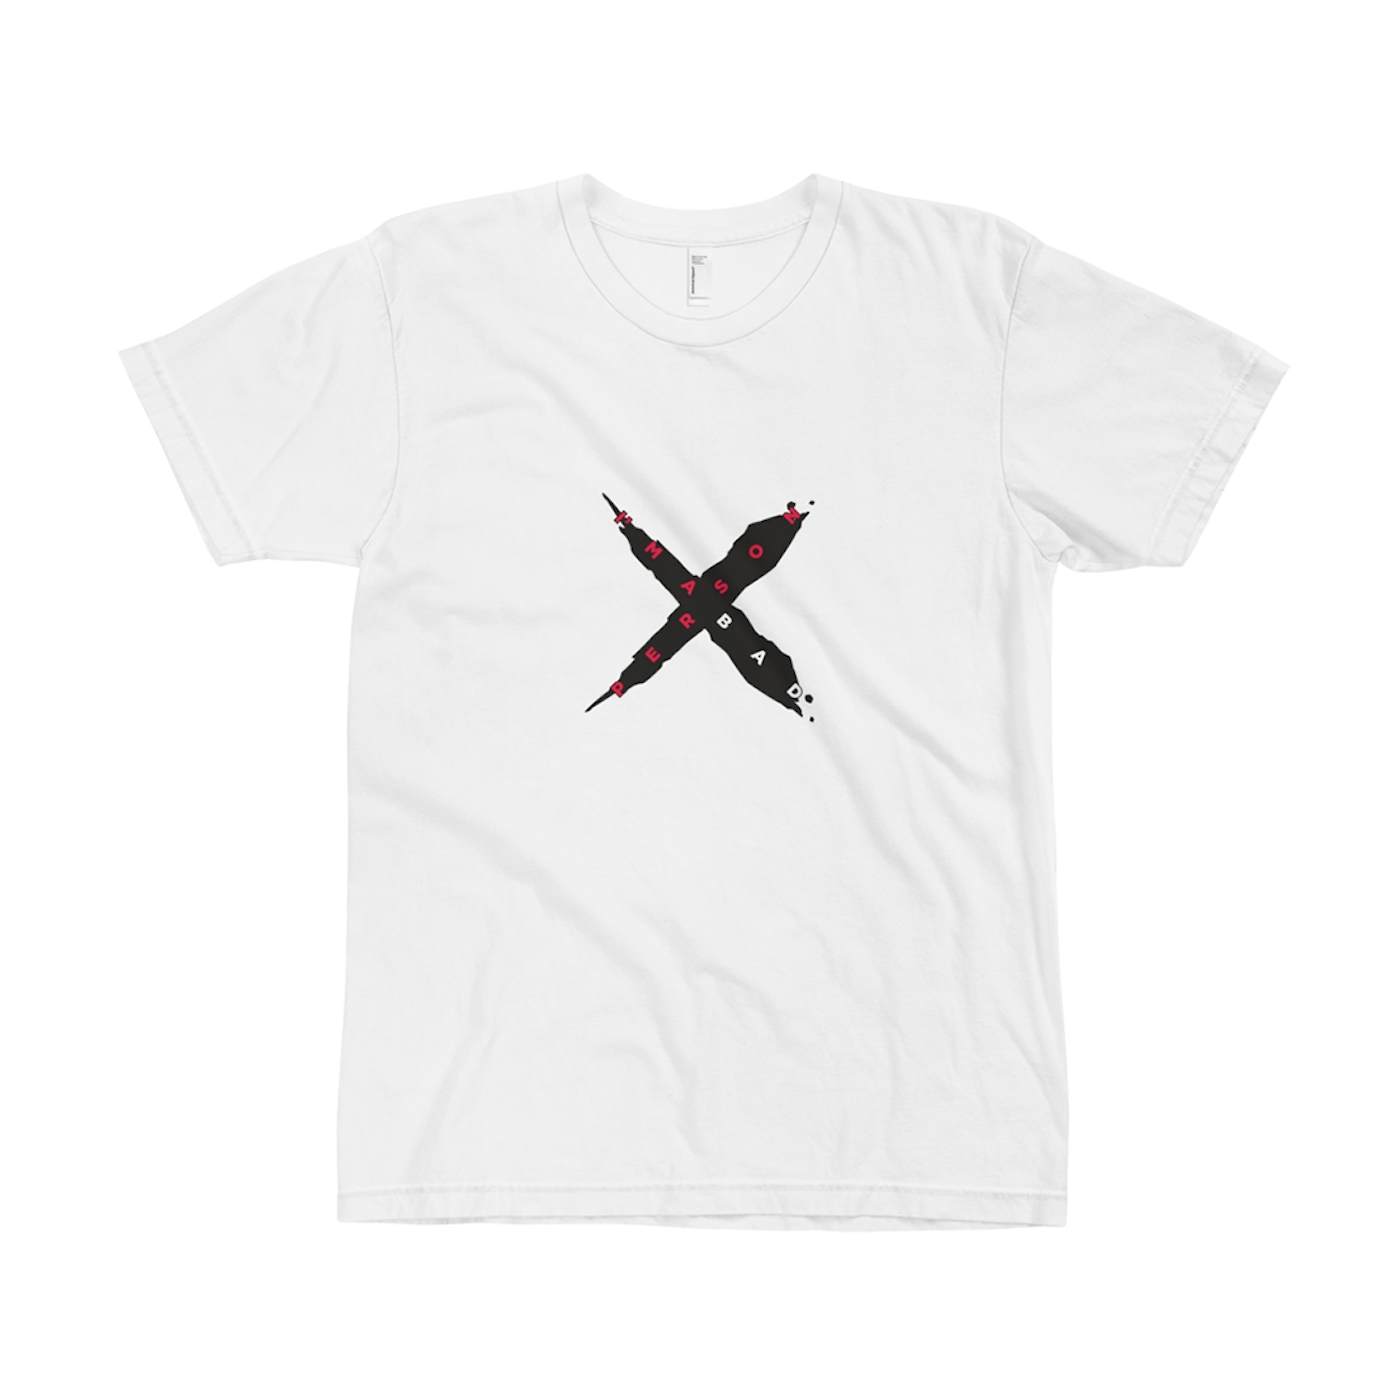 XanMan Bad Person X T-Shirt